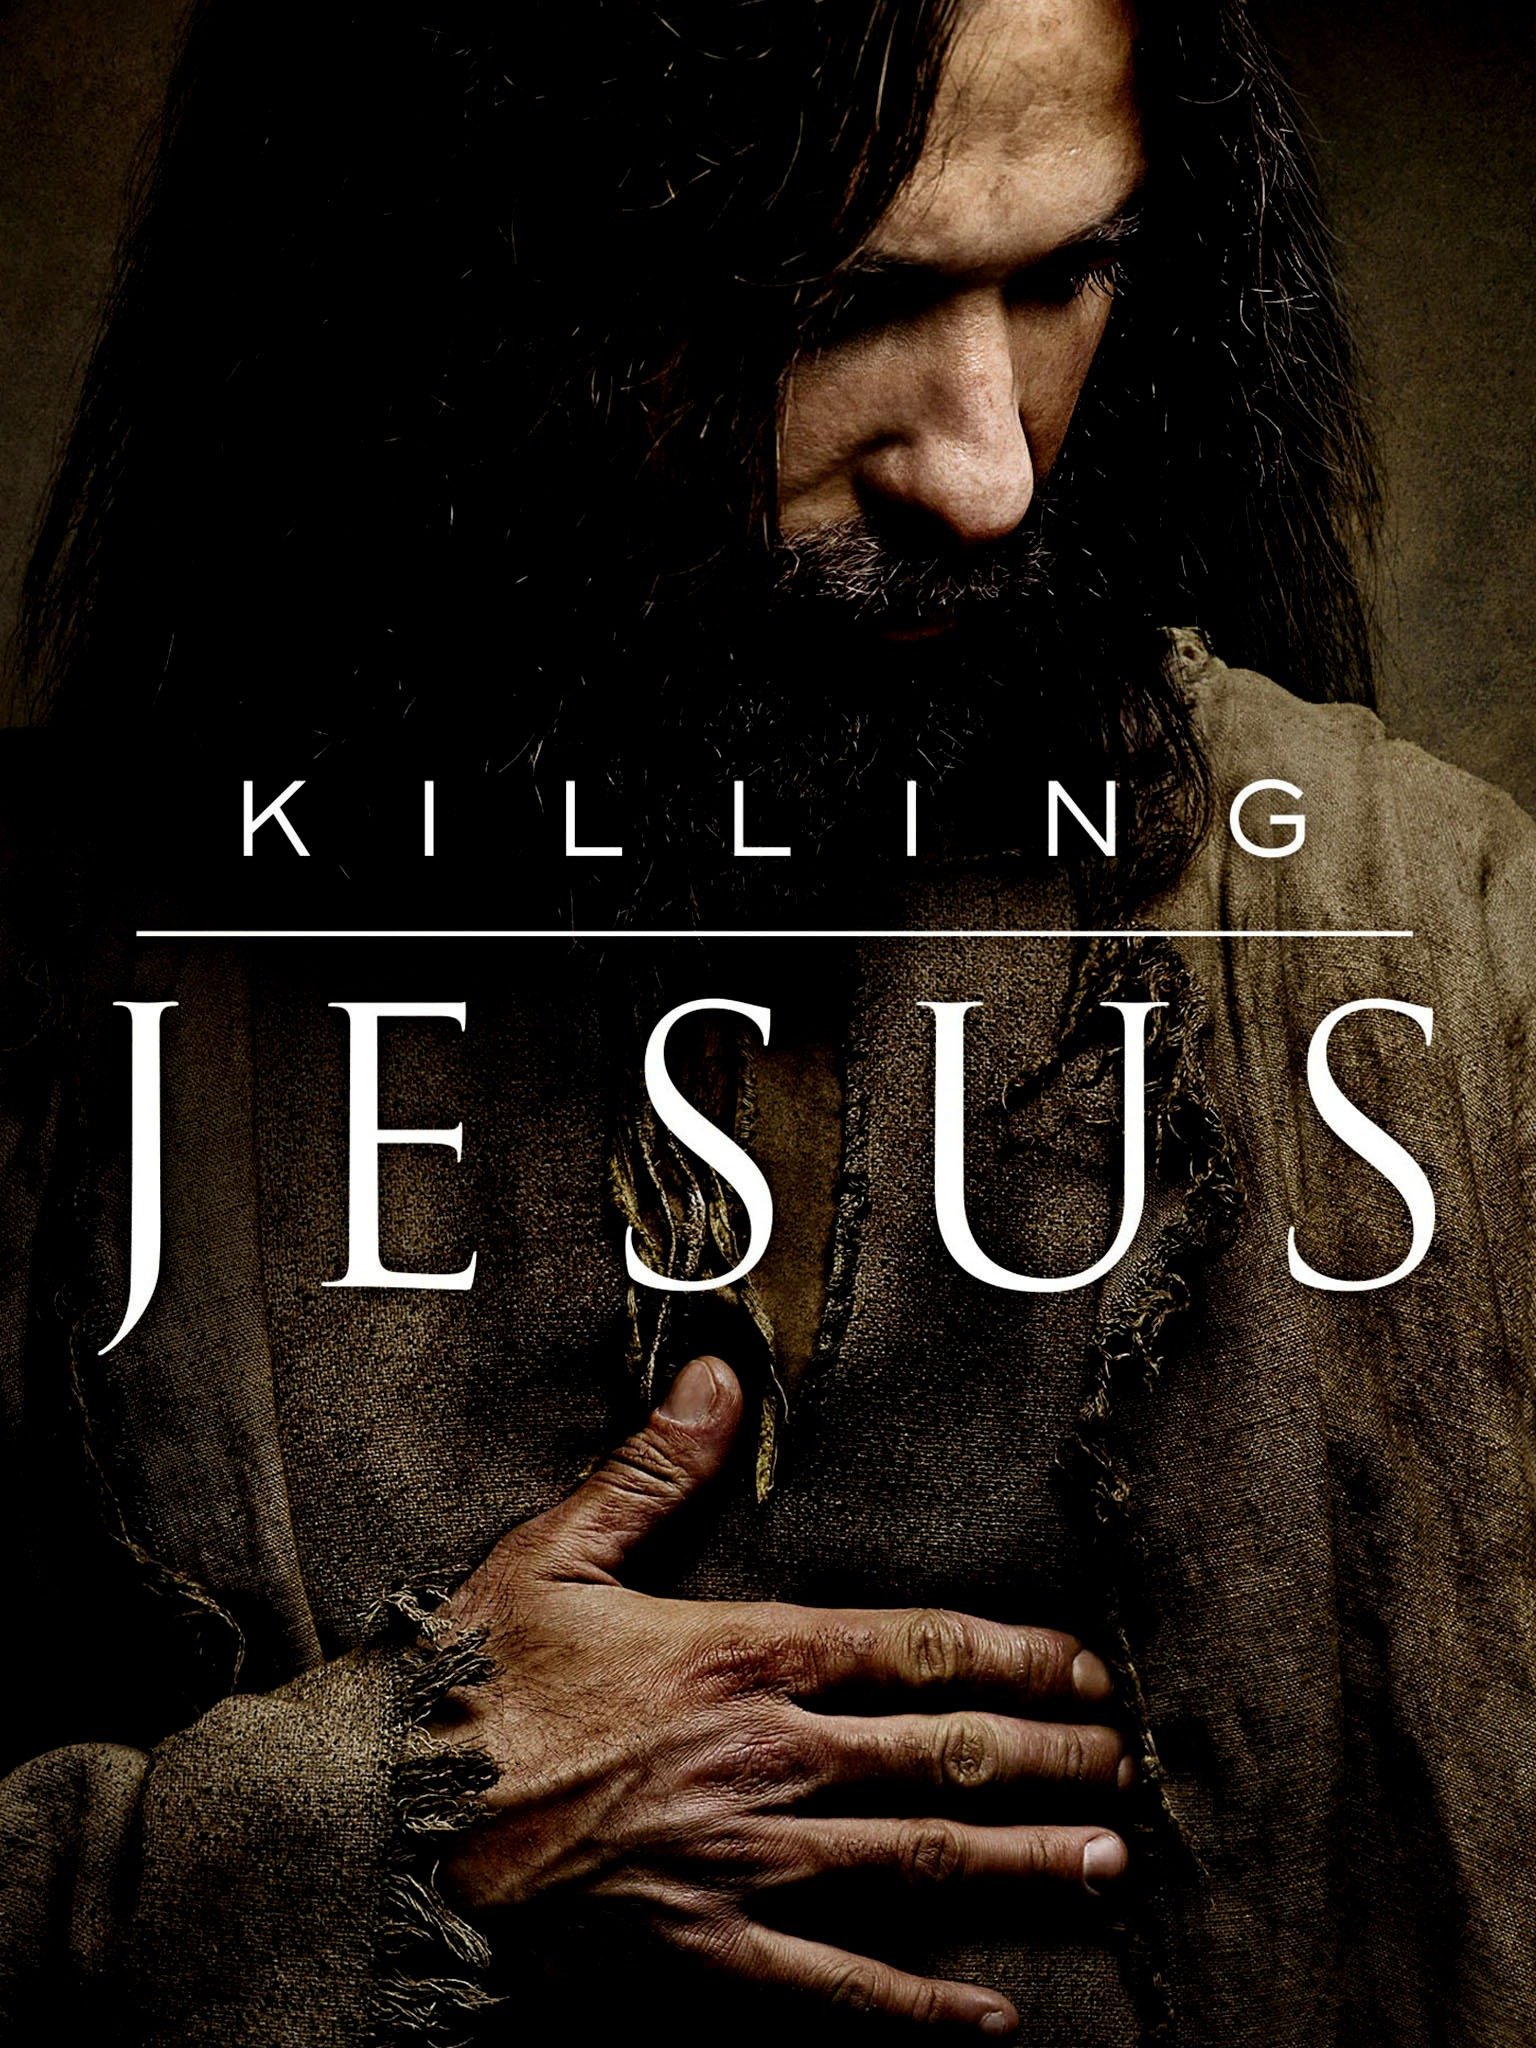 Killing Jesus pic